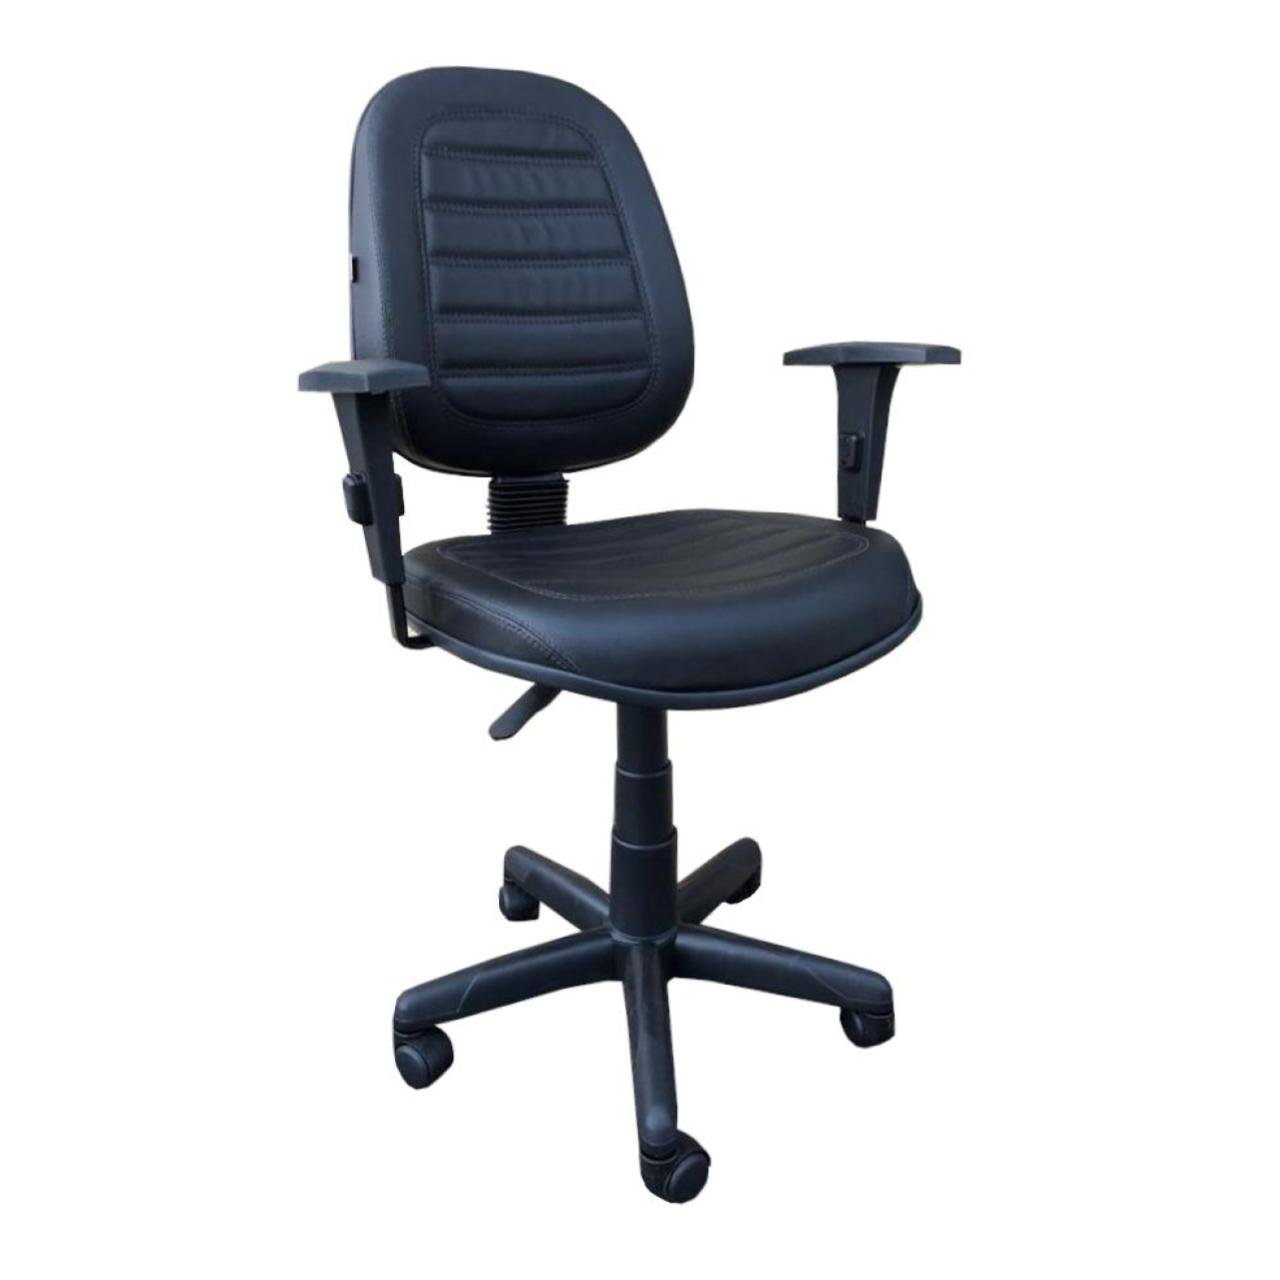 Cadeira Executiva ALTA Costurada Giratória c/ Braços Reguláveis - MARTIFLEX - 32988